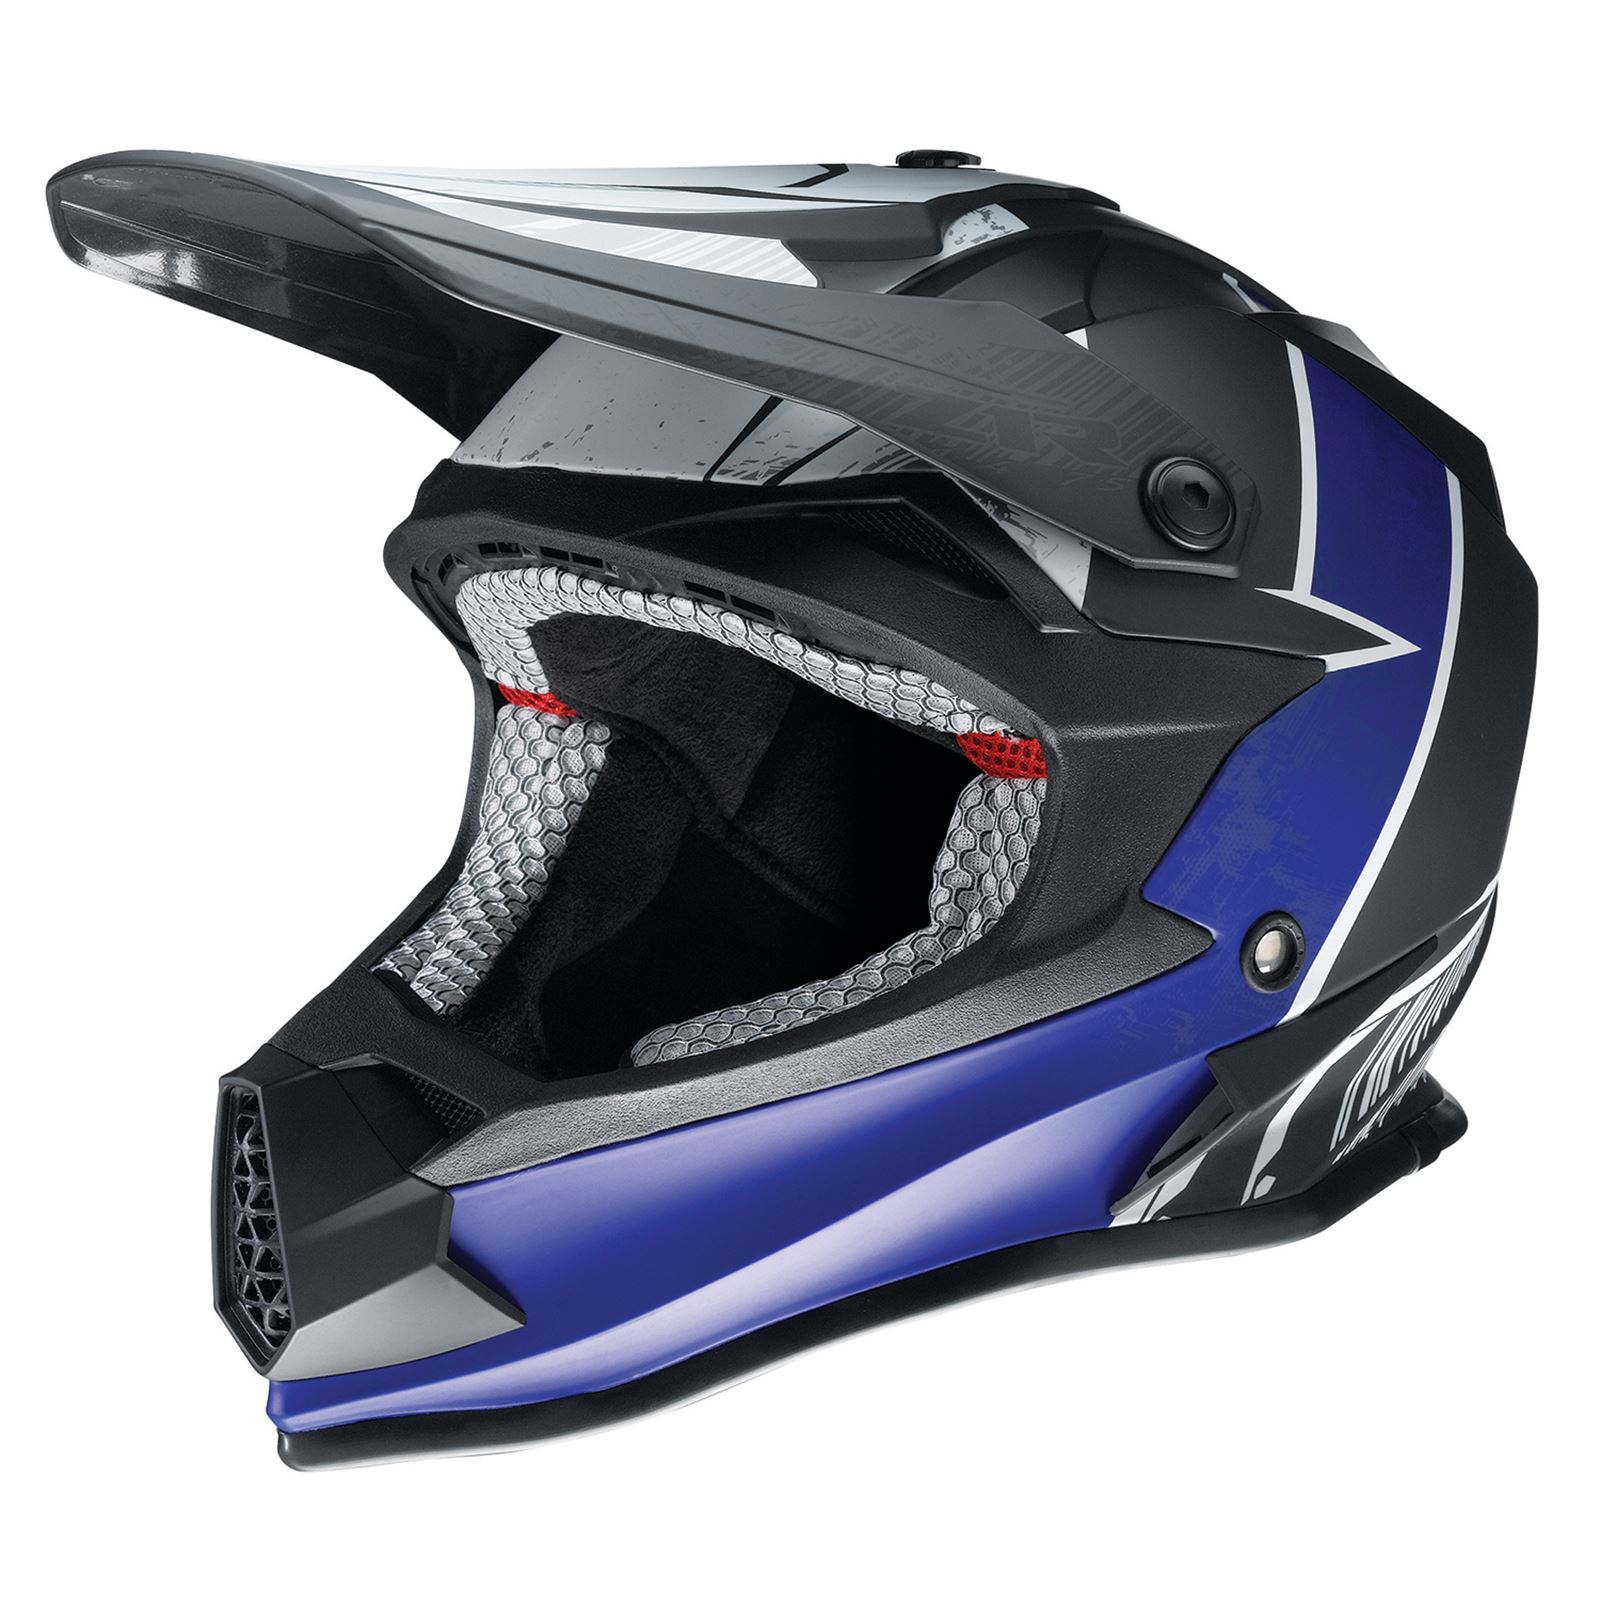 Z1R Youth F.I. Helmet - Fractal - MIPS® - Matte Black/Blue - Large